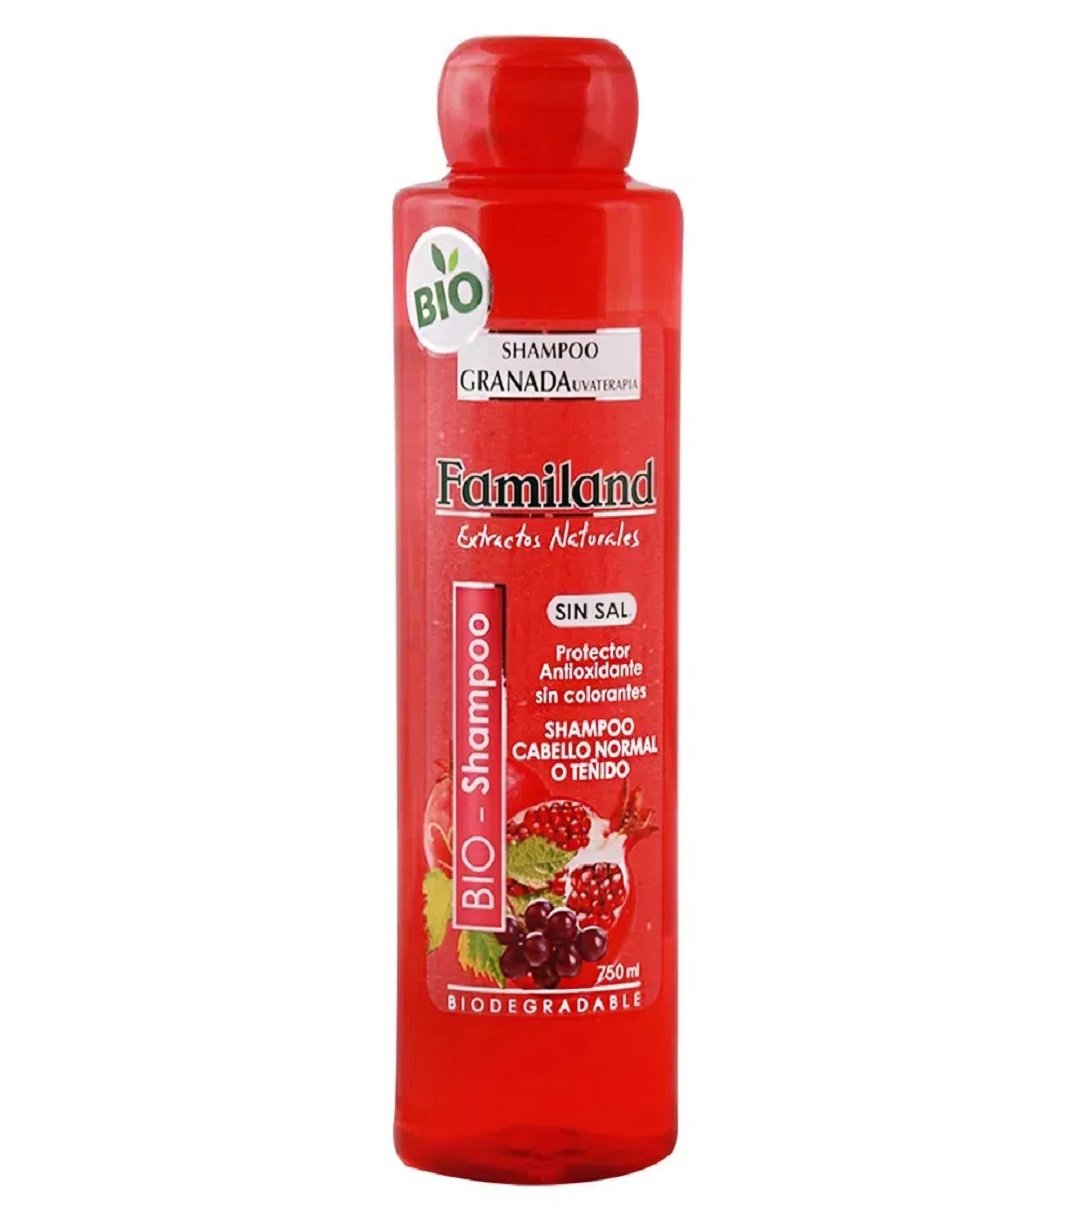 Shampoo Familand Granada 750ml